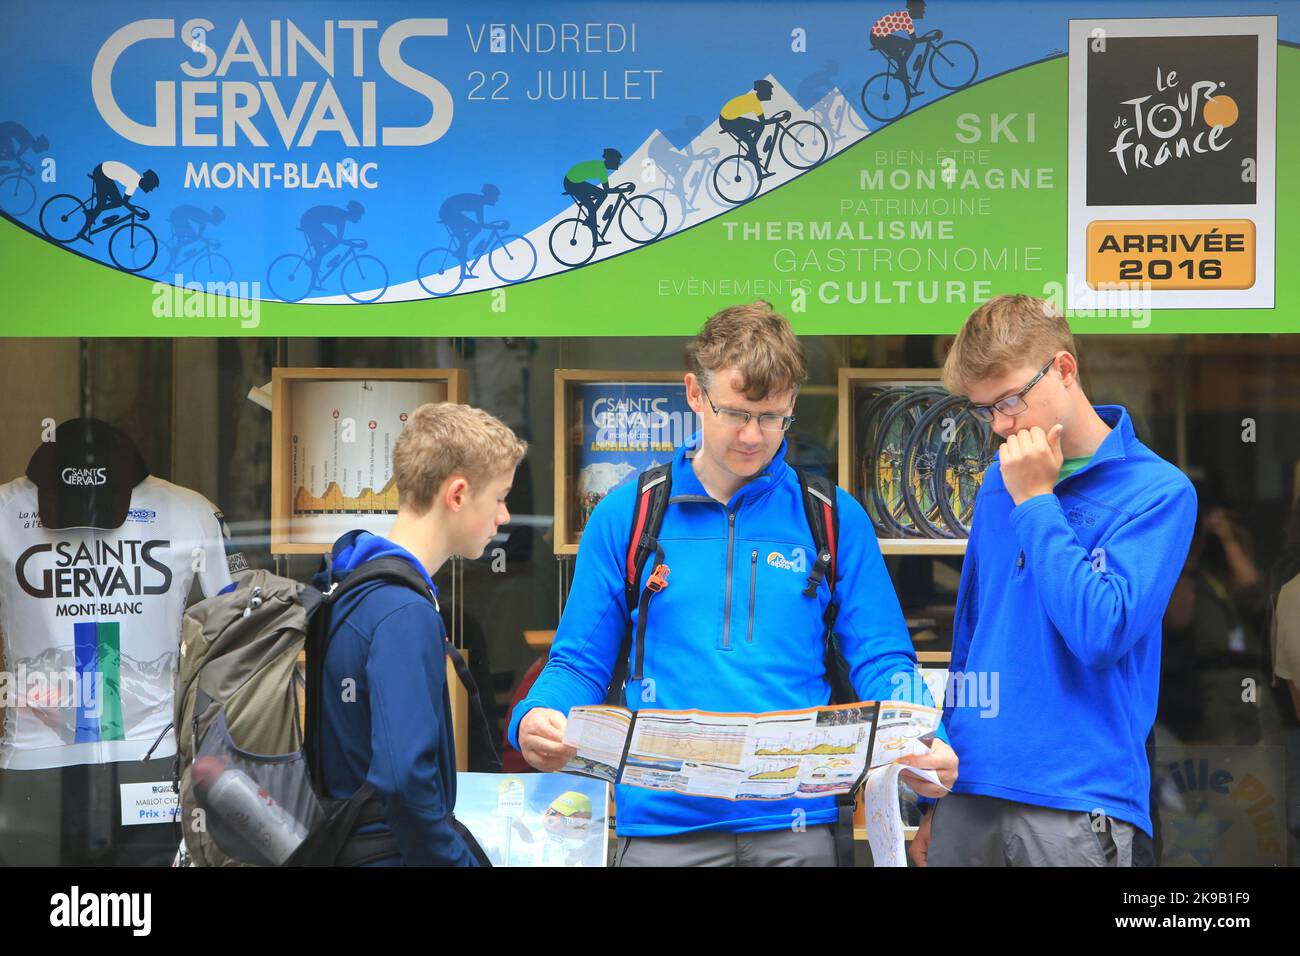 Touristes lisant un Plan du Tour de France devant une vitrine de l'Office du Tourisme. Vendredi 22 juillet 2016. Saint-Gervais-les-Bains. Haute-Savoie Stockfoto